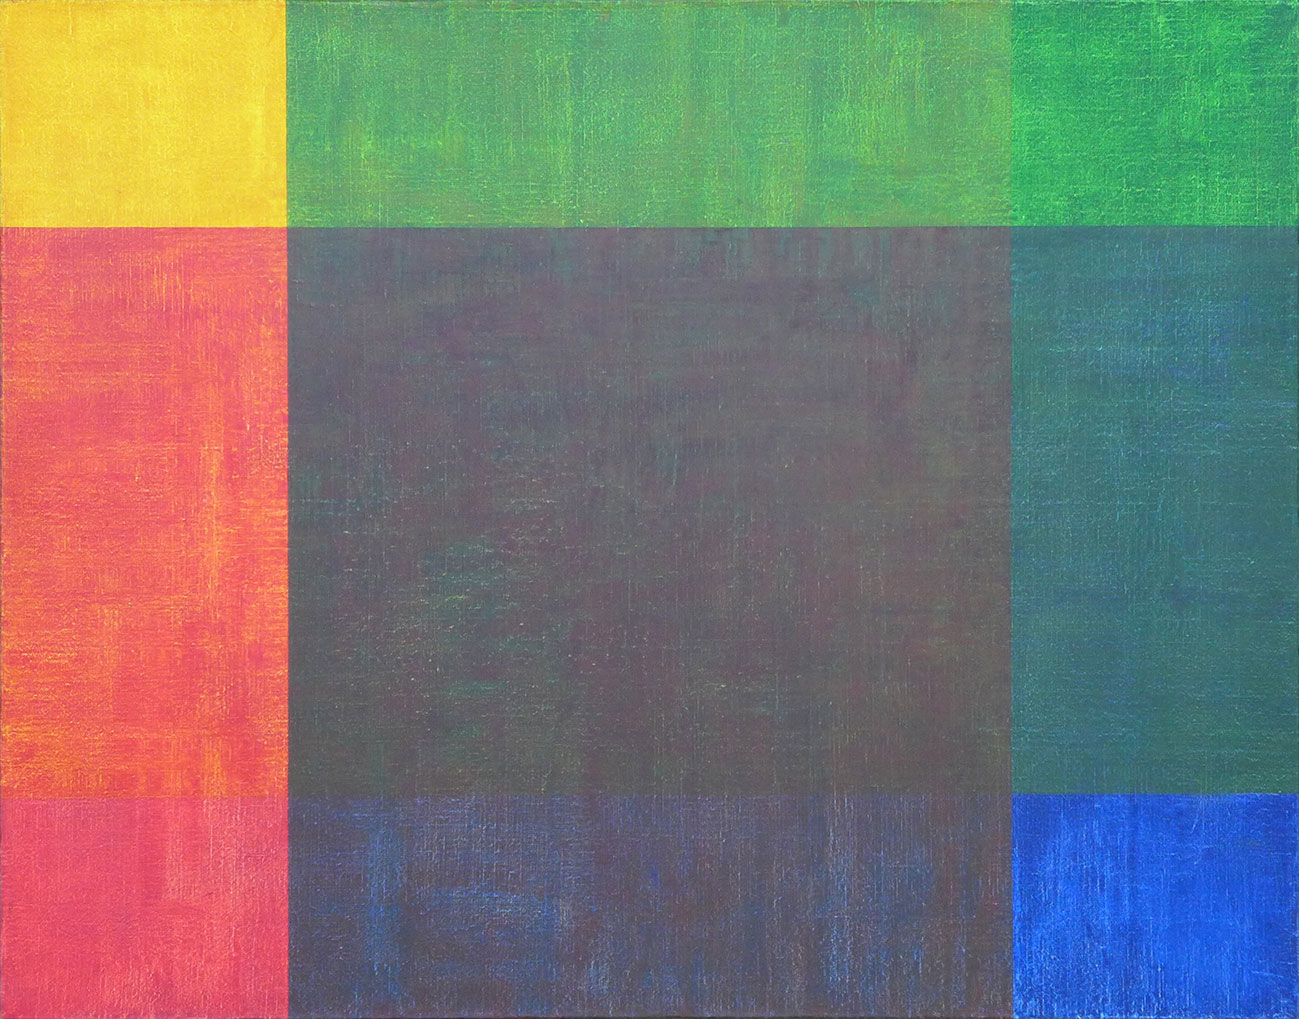 4 rectangles d'or de deuxième espèce de 4 couleurs, bleu, vert, jaune et rouge, se superposent en partie dans un mouvement de rotation lévogyre avec des couleurs transparentes pour des mélanges optiques plus fins sur une toile d'un mètre carré.